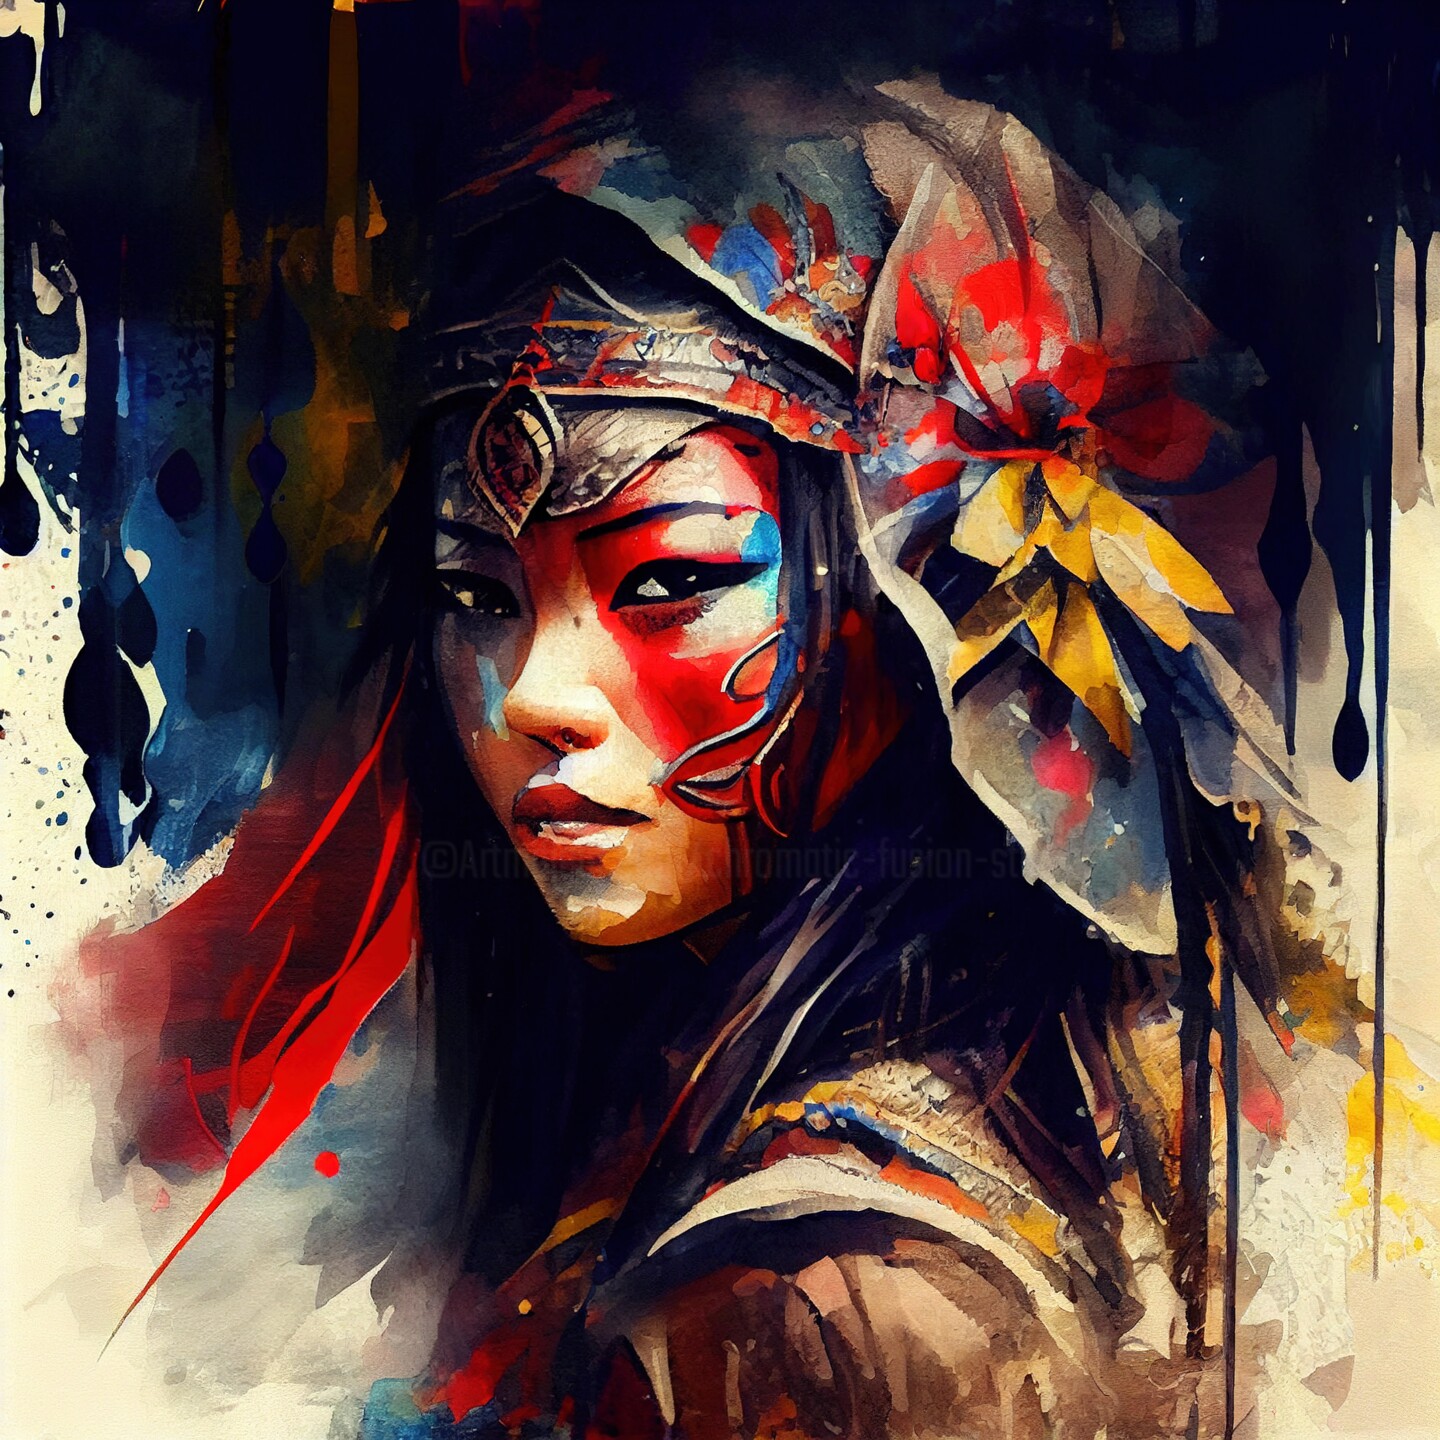 asian warrior women